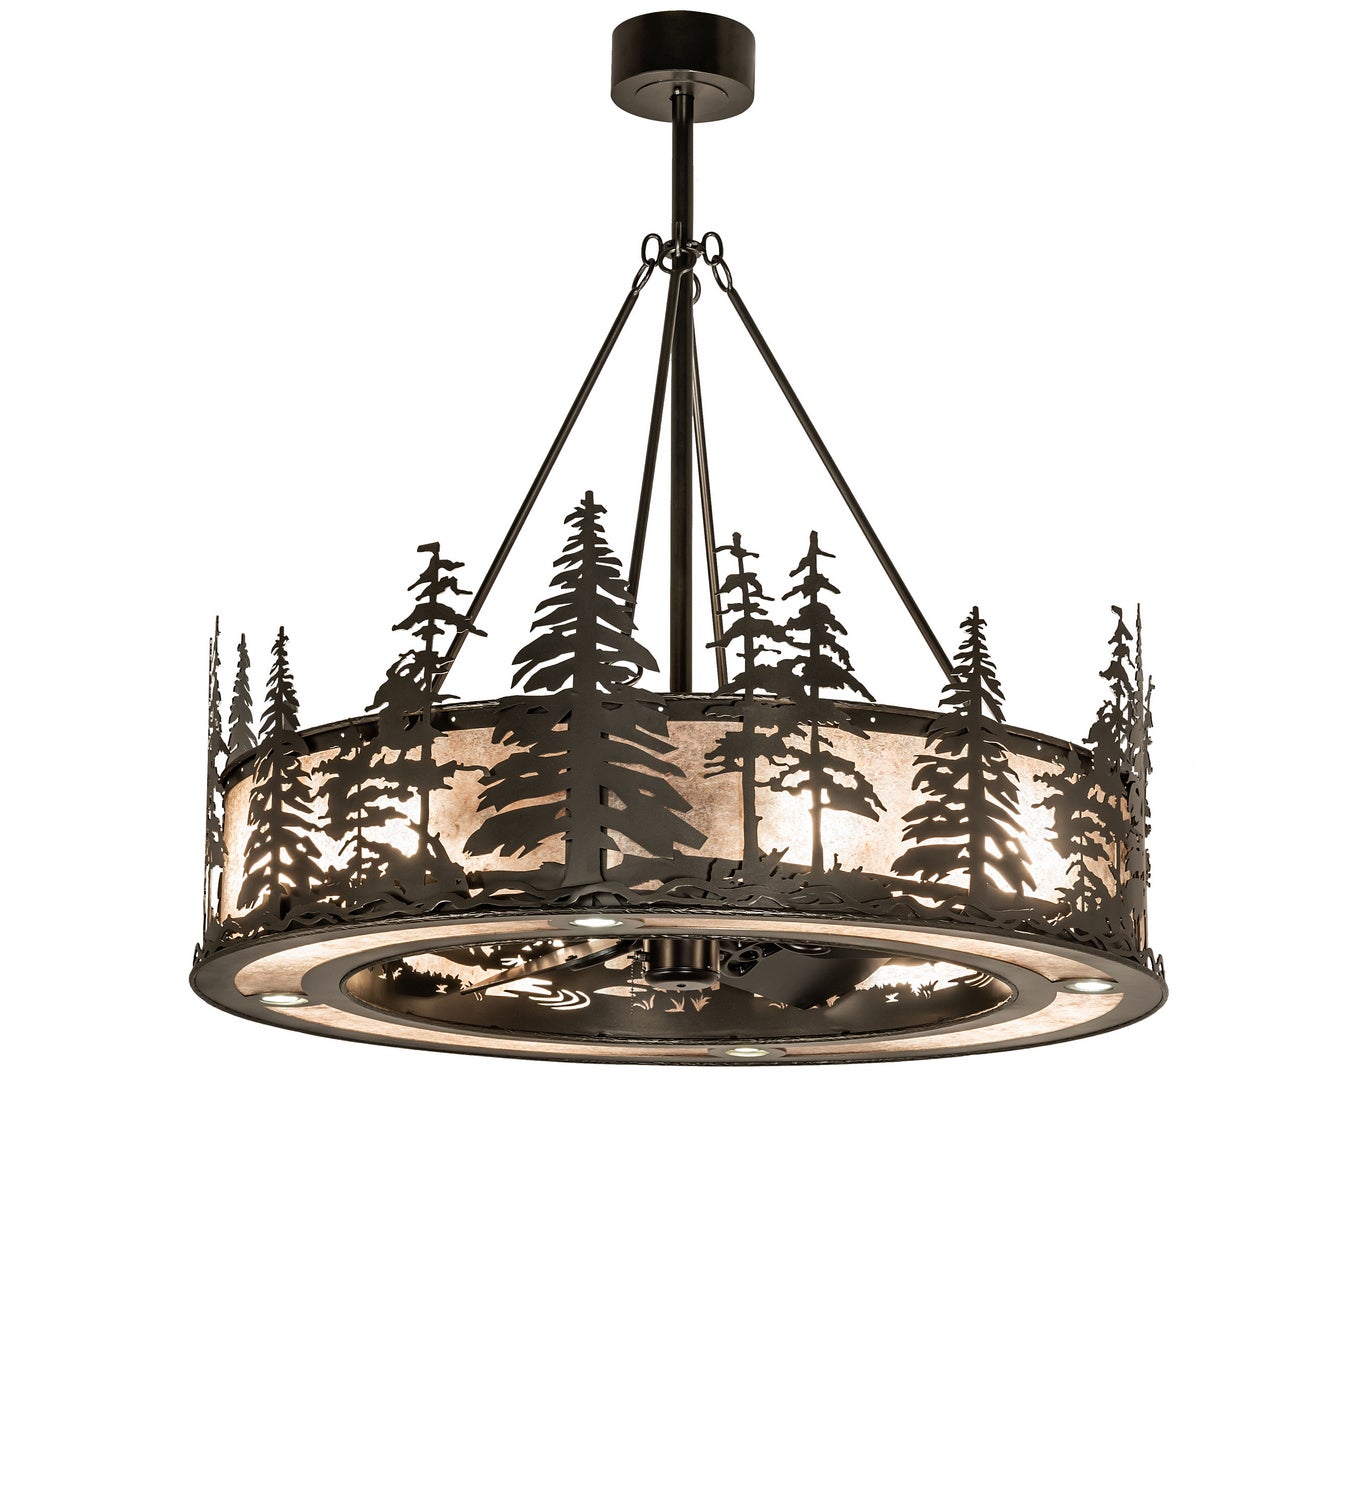 Meyda Tiffany Tall Pines 248834 Ceiling Fan - Oil Rubbed Bronze